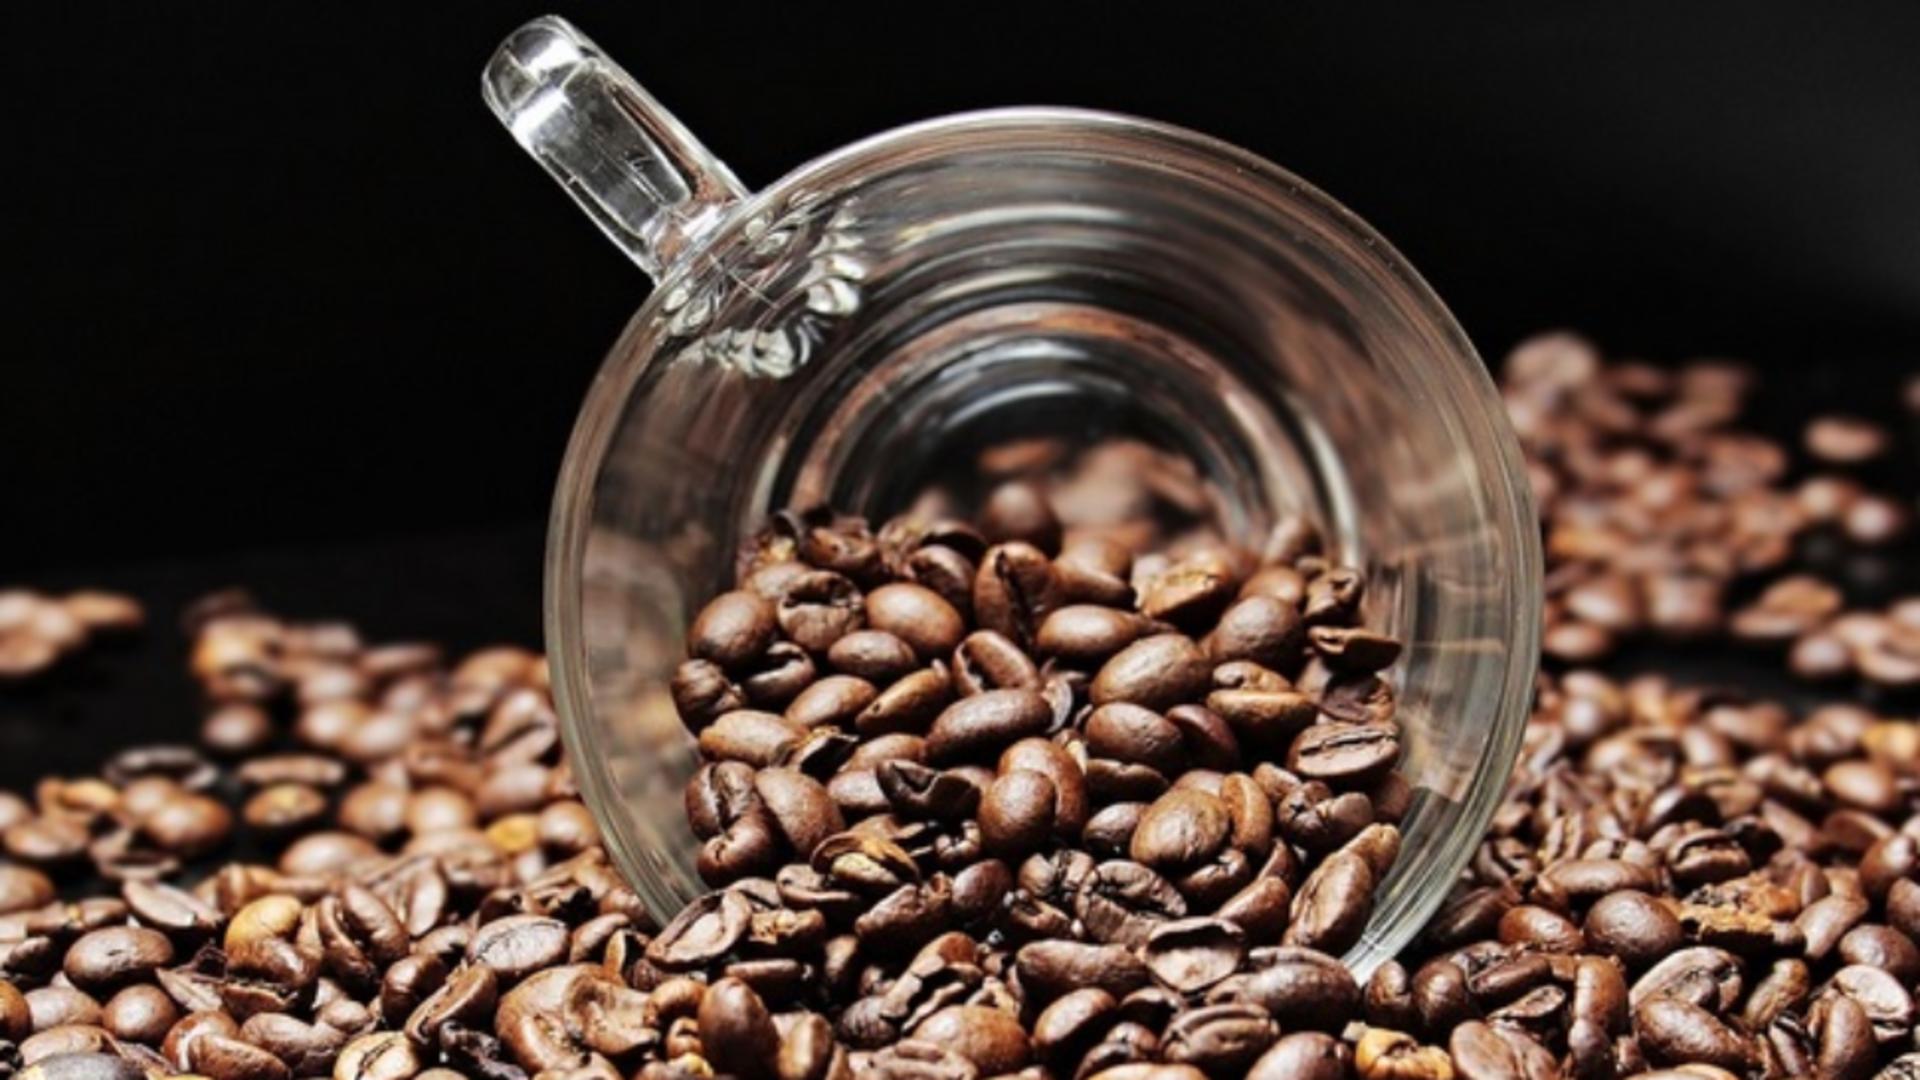 Știai că există sevraj de la cafea, la fel ca în cazul drogurilor? Care sunt simptomele și când apare